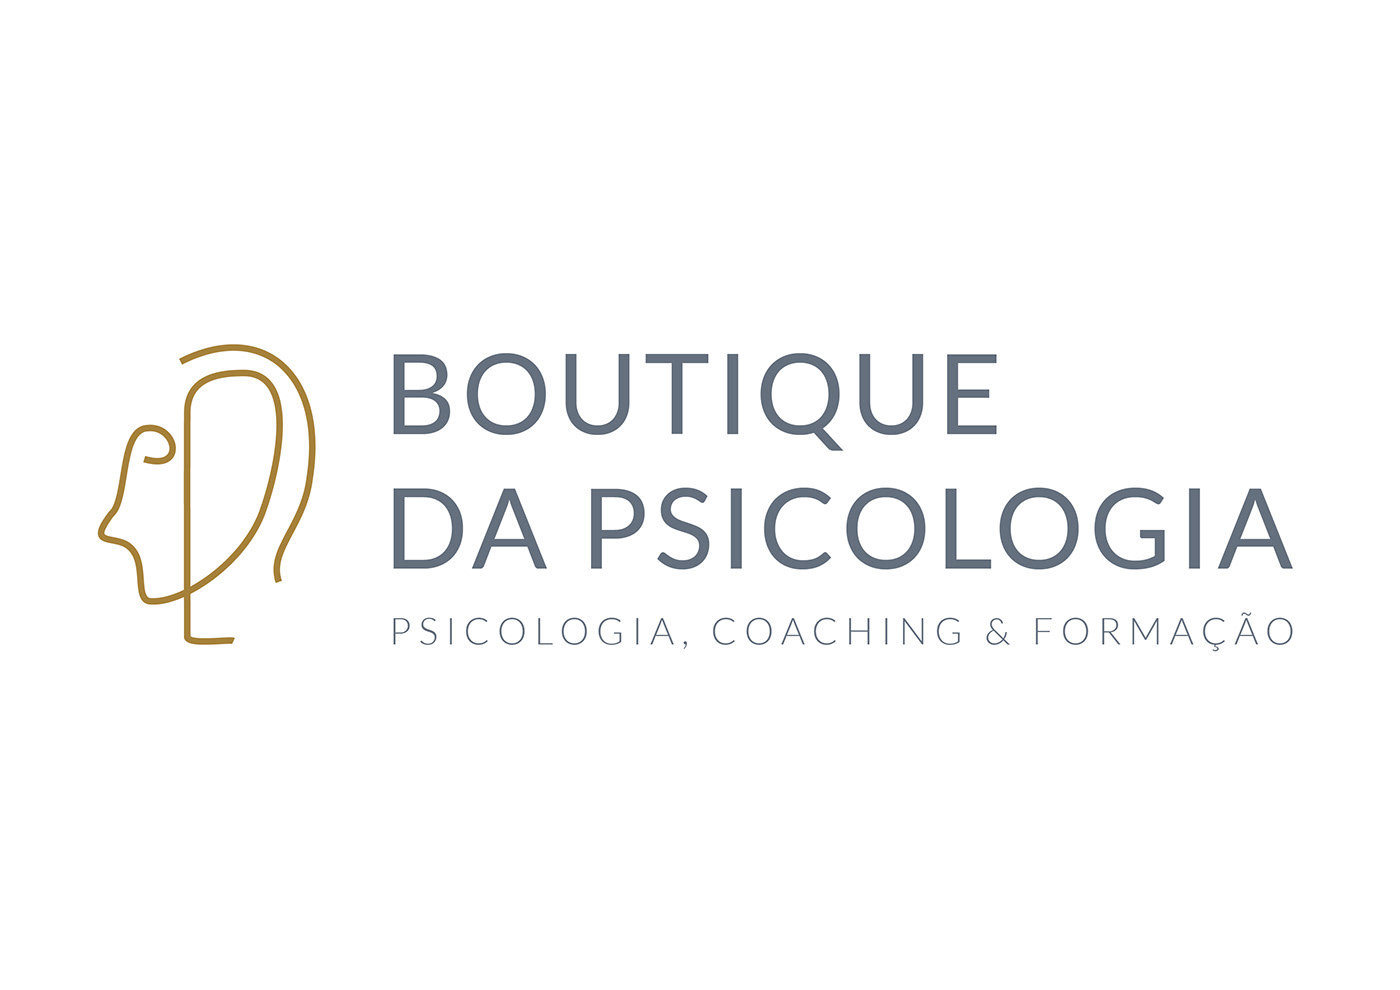 Boutique da Psicologia on Behance